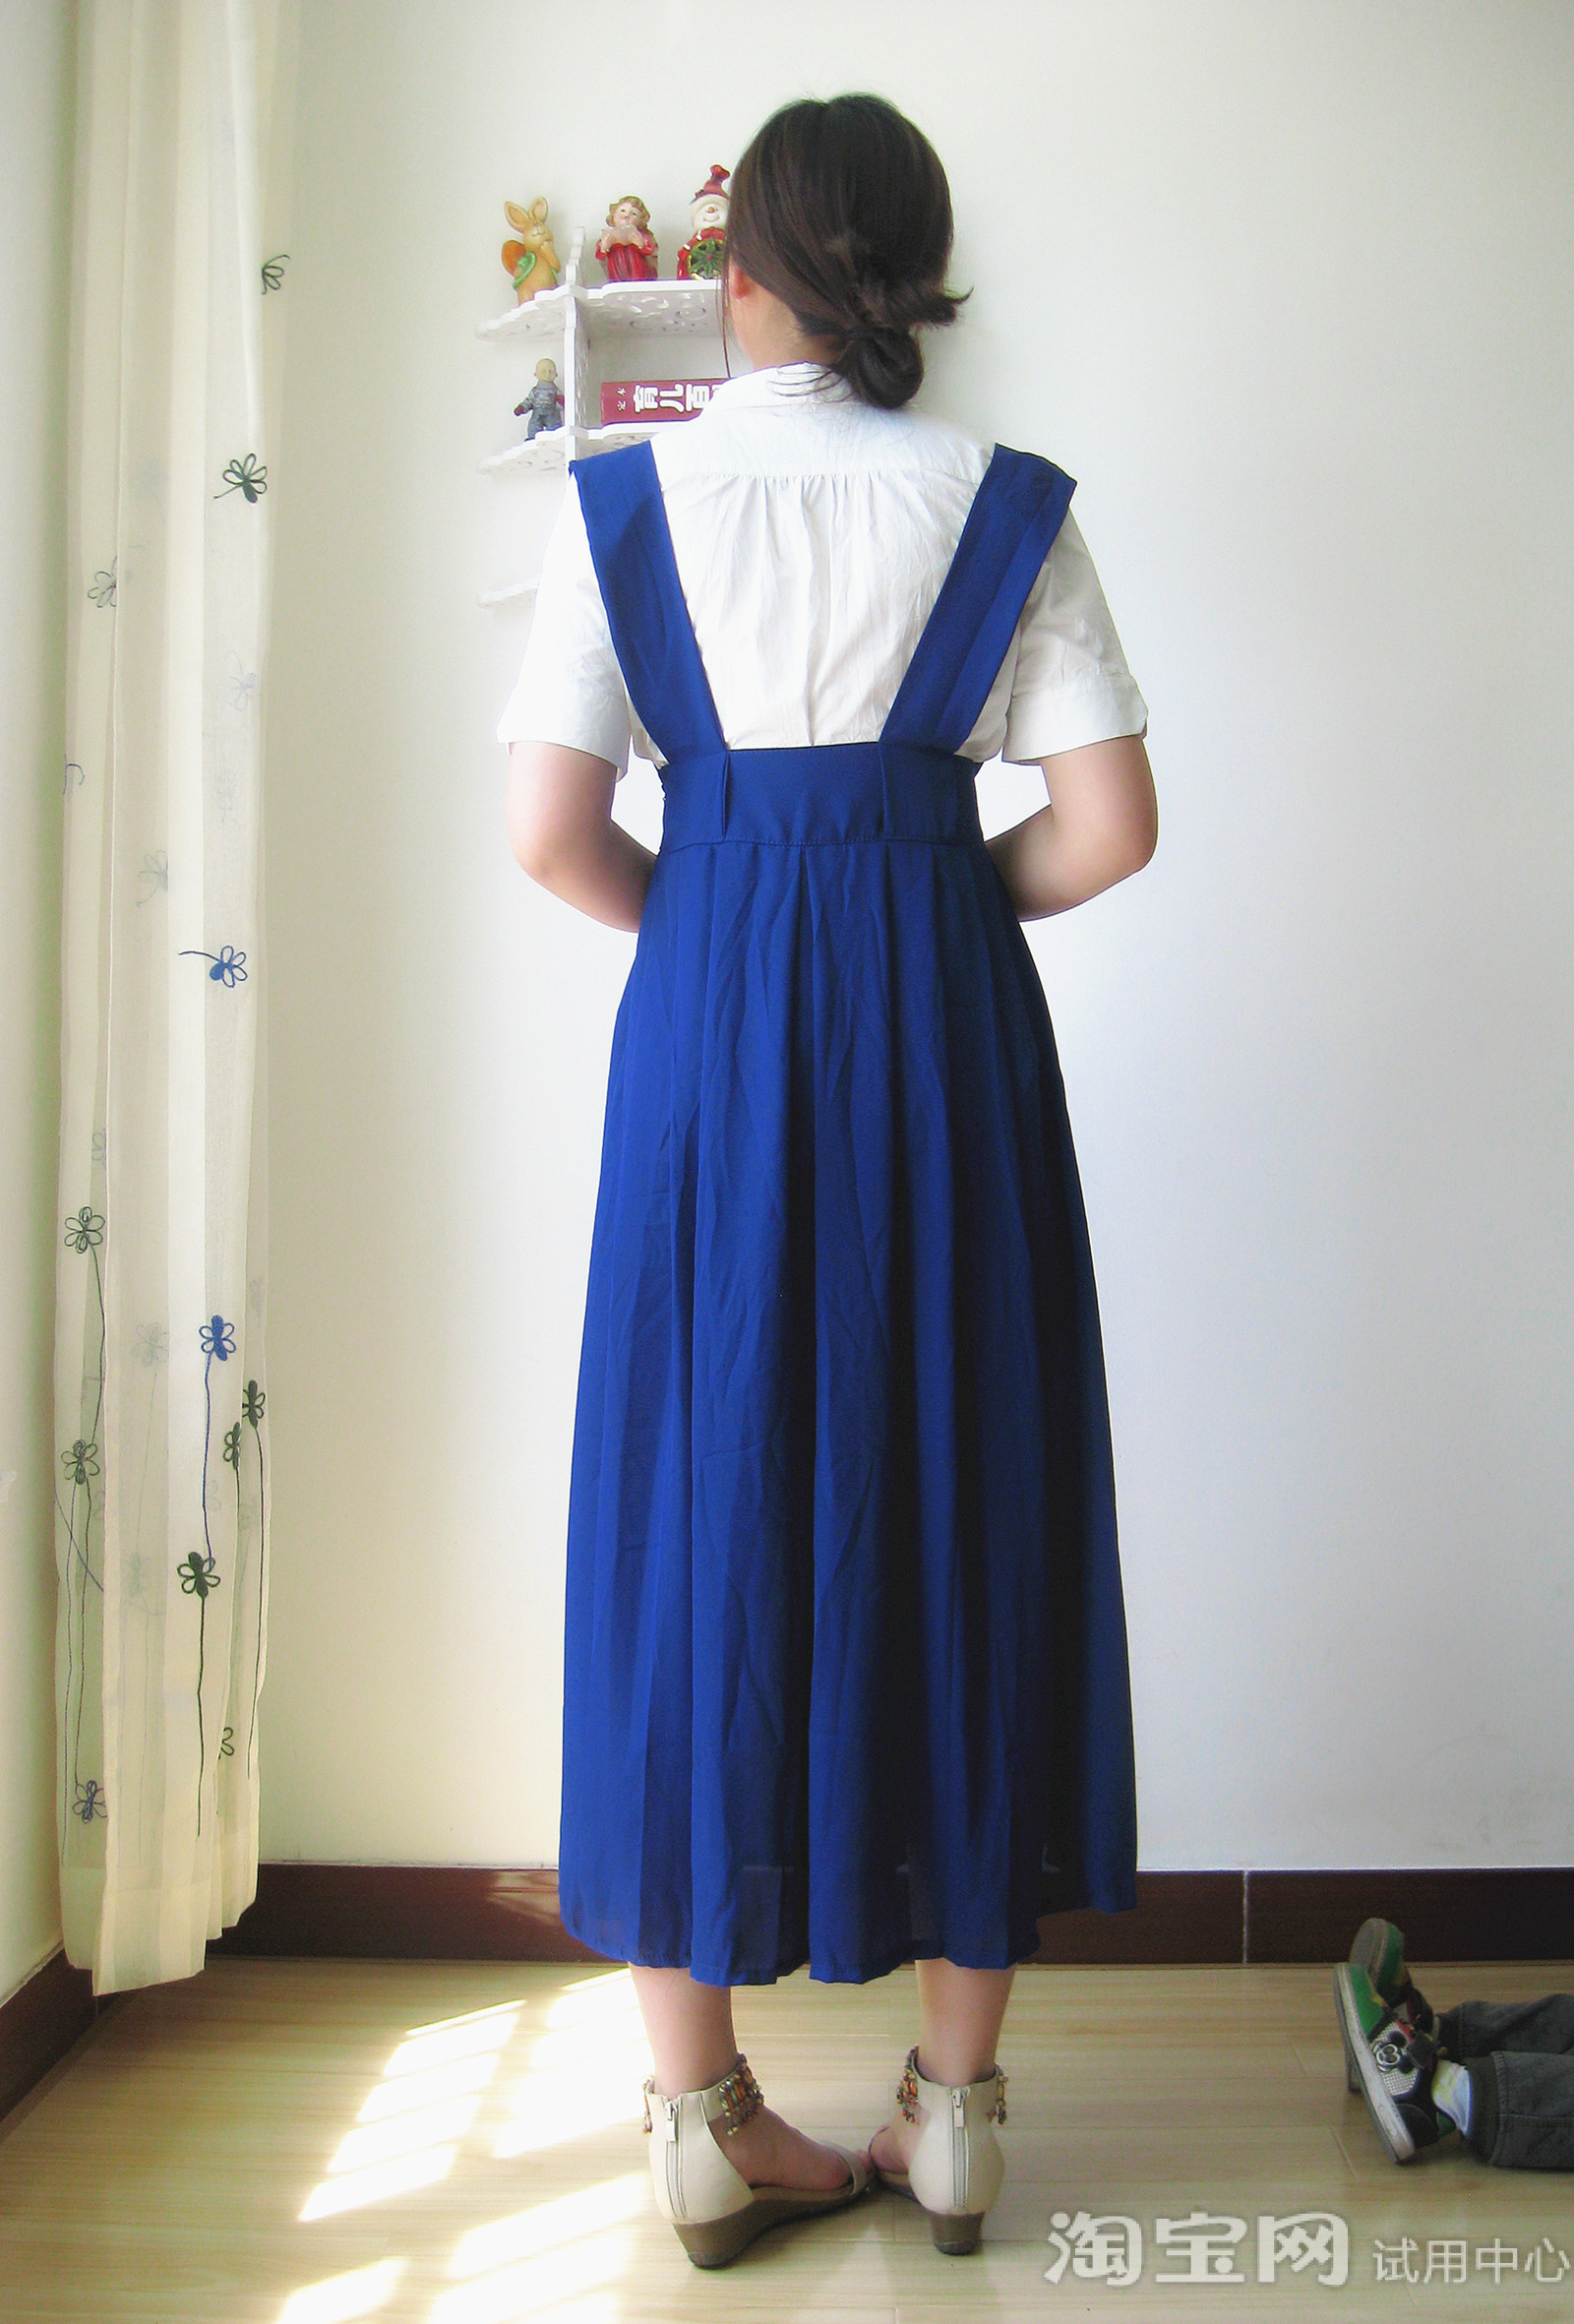 背带裙款式很像校服,蓝色小清新,很有文艺范!